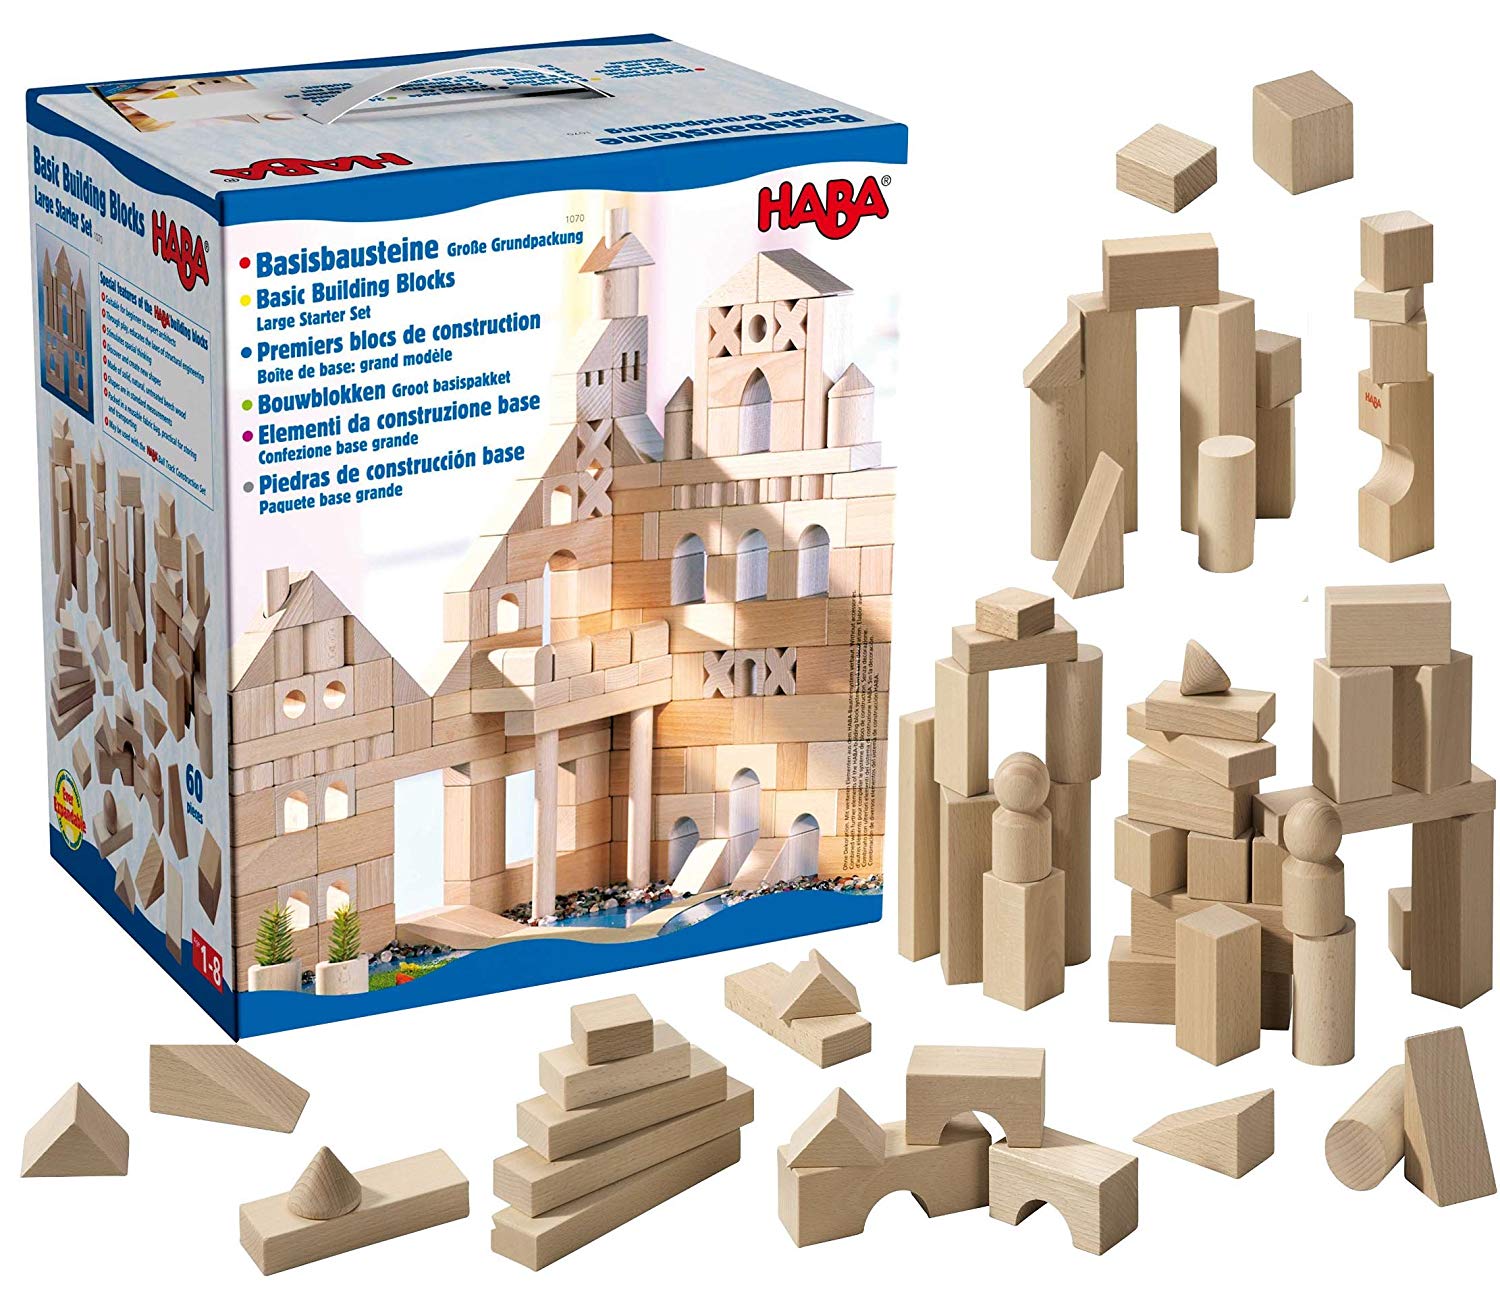 Haba Basic Building Blocks Starter Set Large